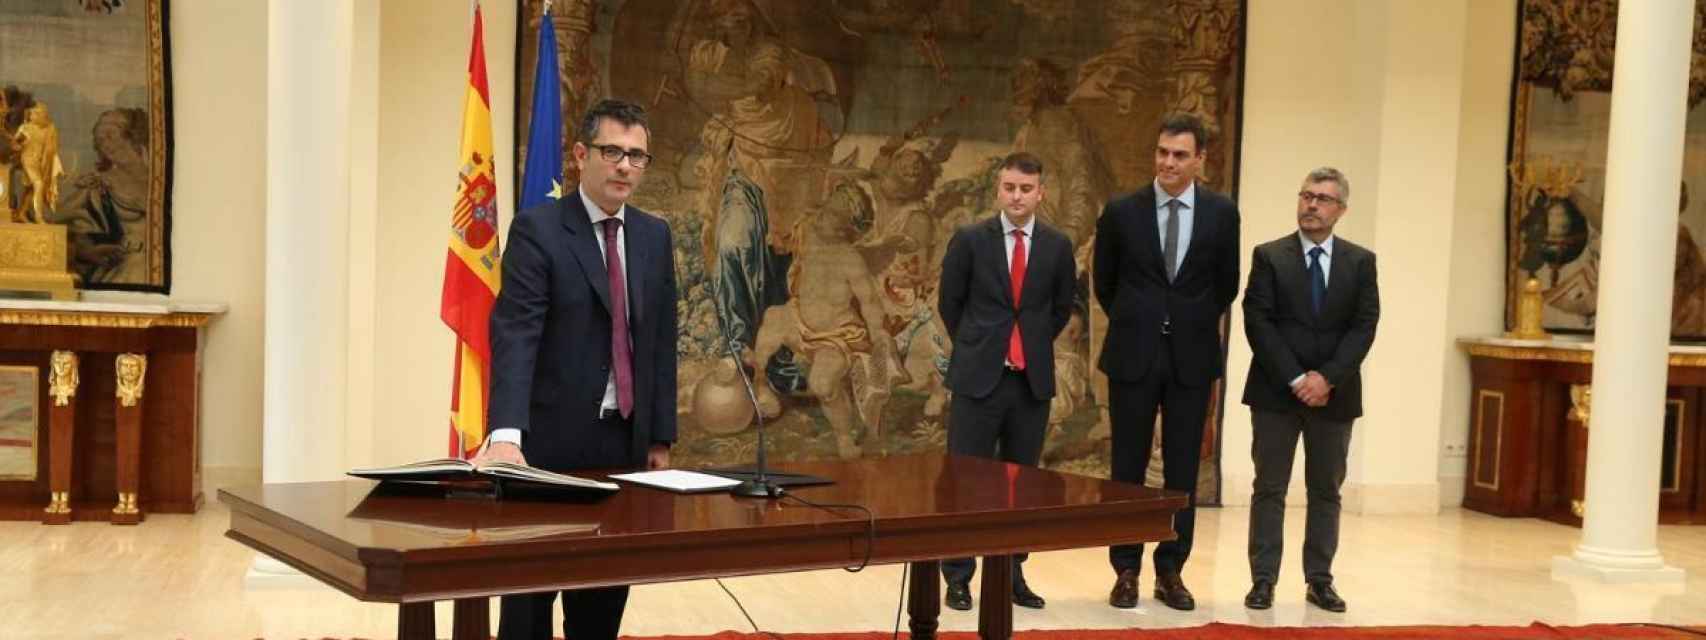 Bolaños, en 2018, jurando el cargo de secretario general de la Presidencia. En el fondo: Iván Redondo, Pedro Sánchez y Miguel Ángel Oliver.